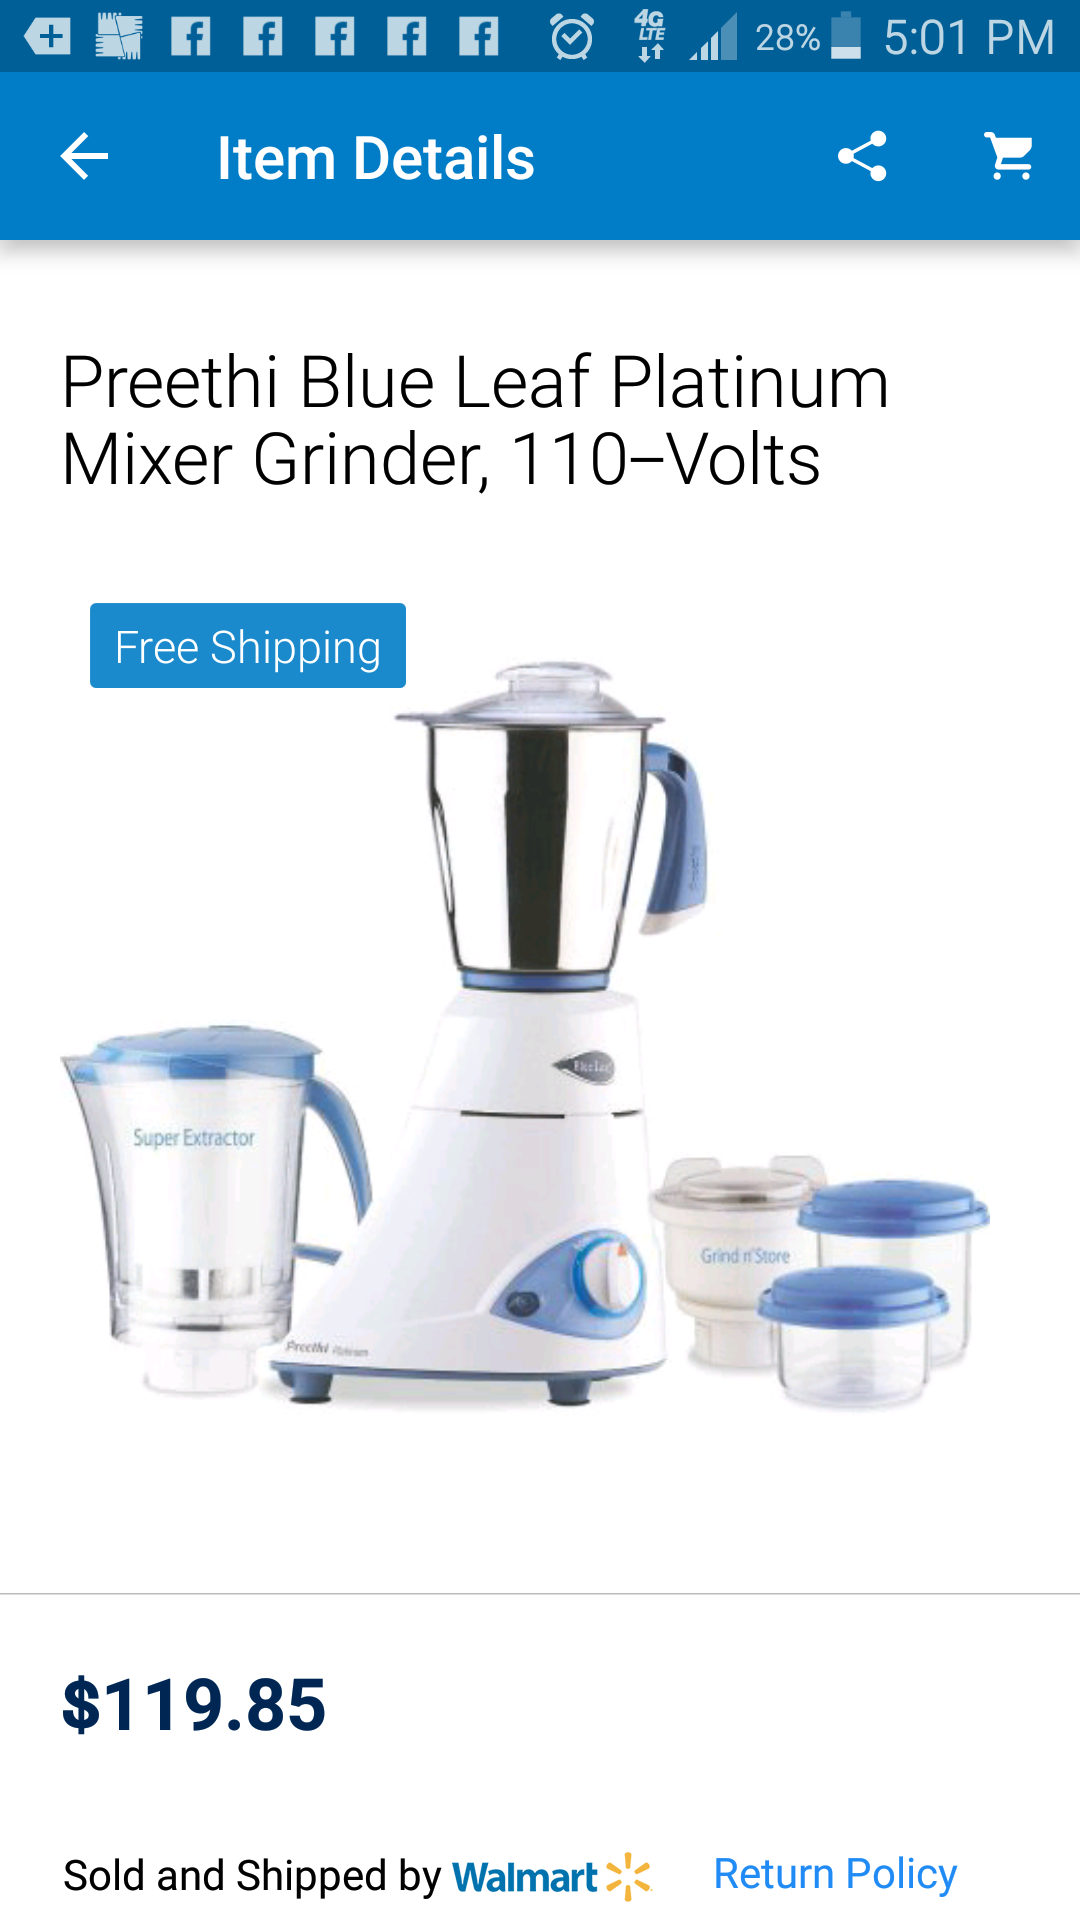 Brand new mixer/grinder